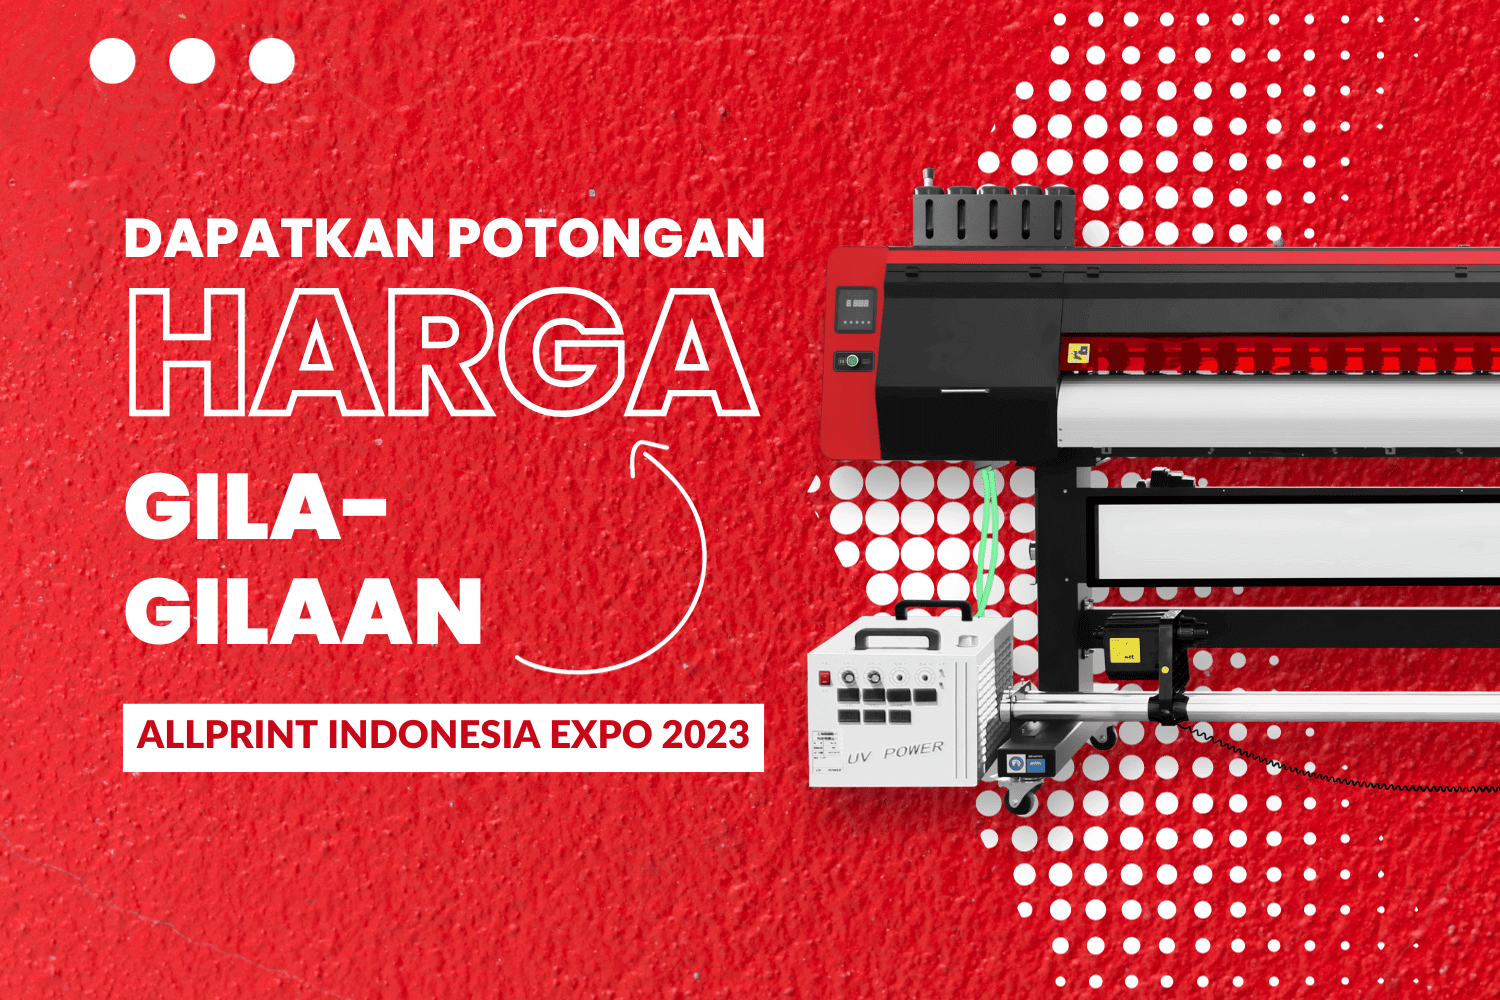 Potongan Harga Gila-Gilaan Di Allprint Indonesia Expo 2023